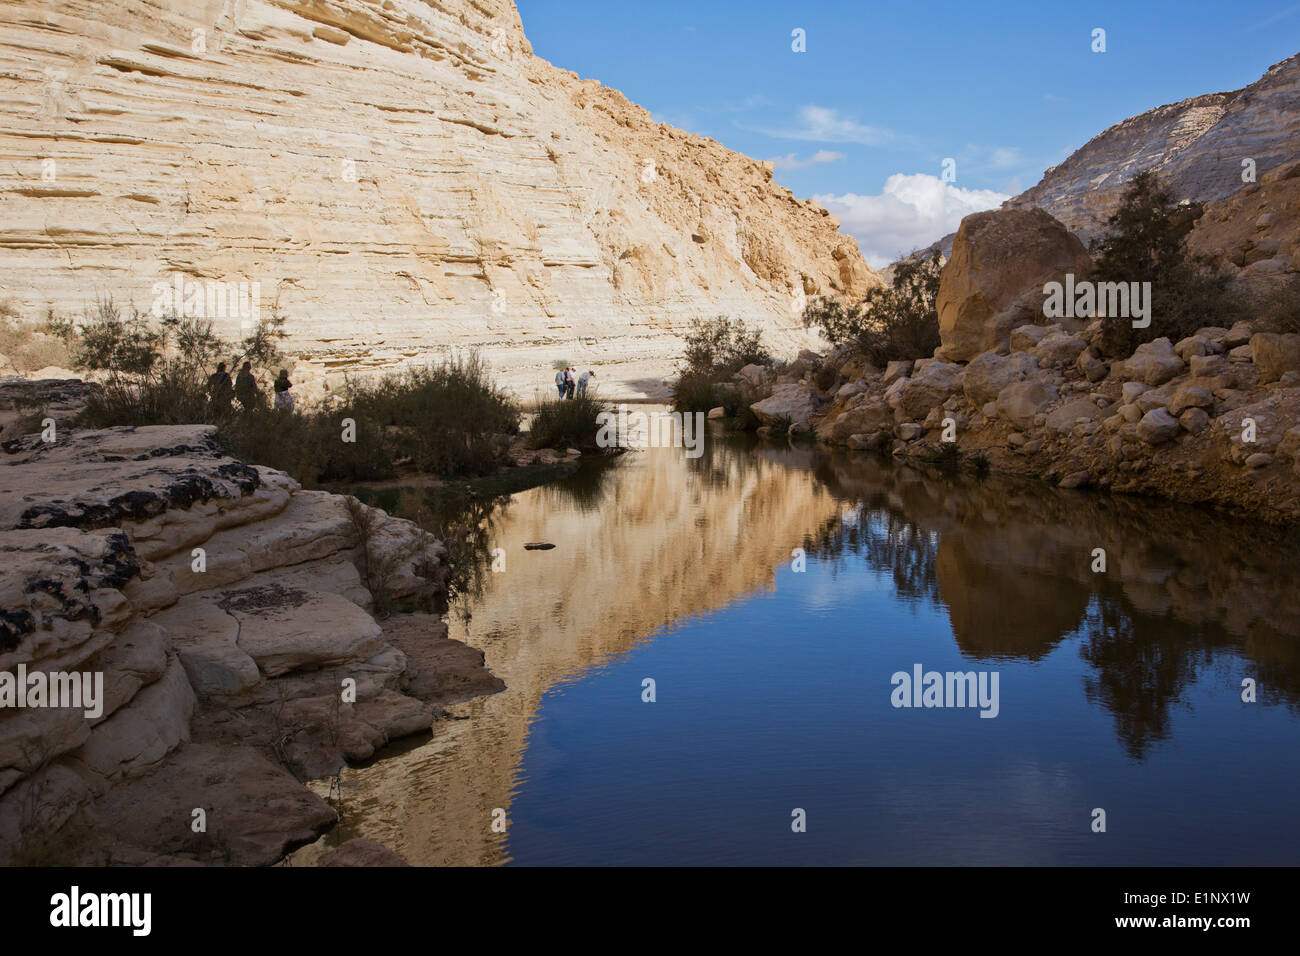 Ein Avdat, süße Wasserquelle in der Wüste Negev, israel Stockfoto